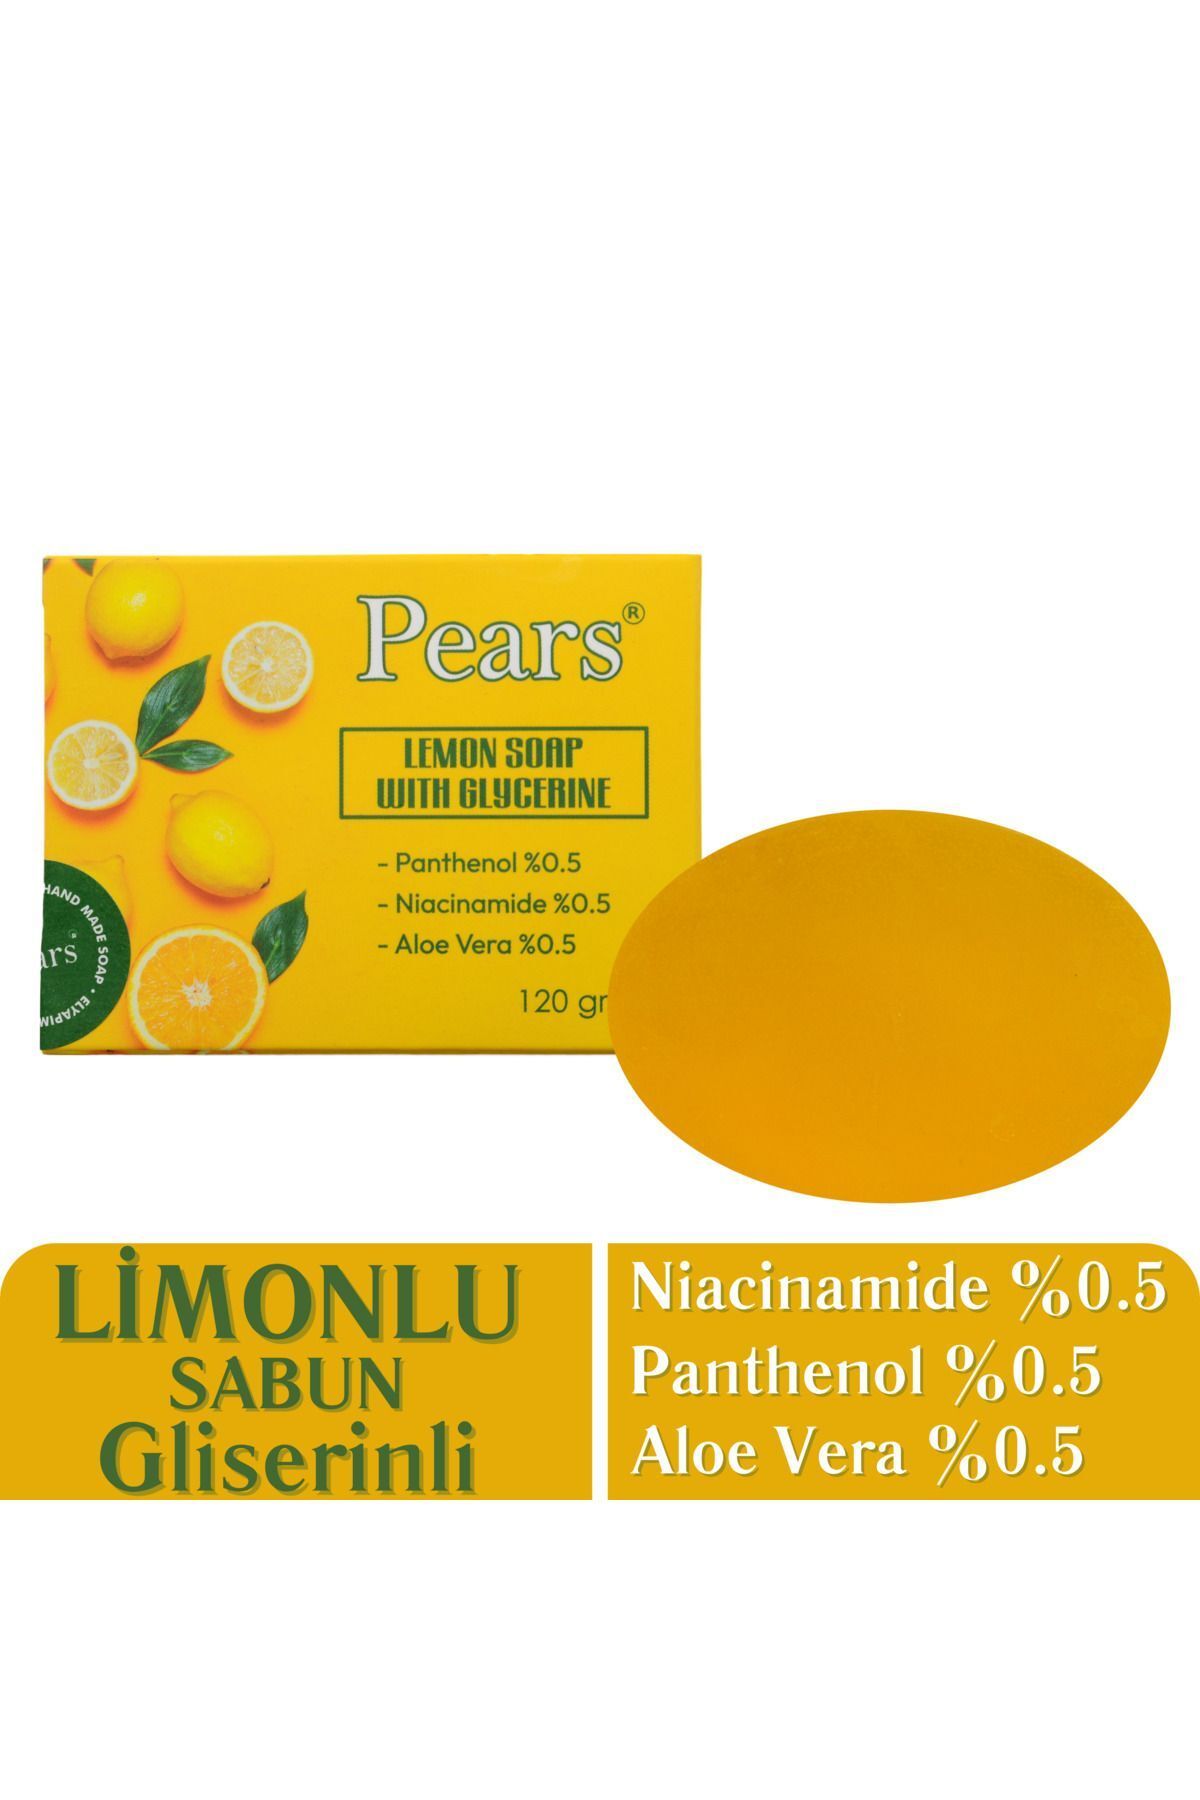 Pears Gliserinli Limon Sabunu 120 gr - Lemon Soap With Glycerine 120 gr